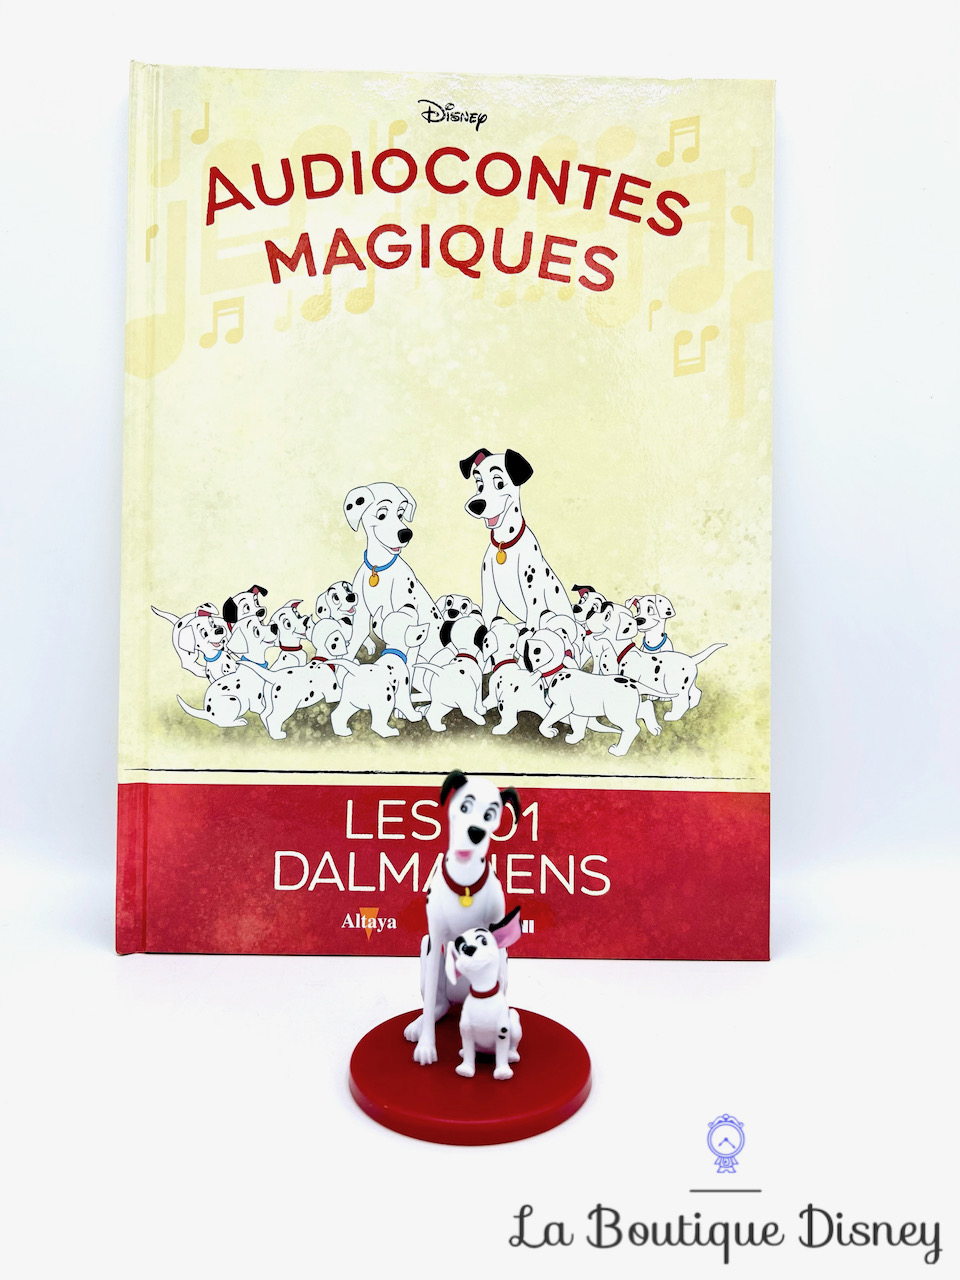 Livre Audiocontes Magiques Les 101 Dalmatiens Disney Altaya encyclopédie figurine